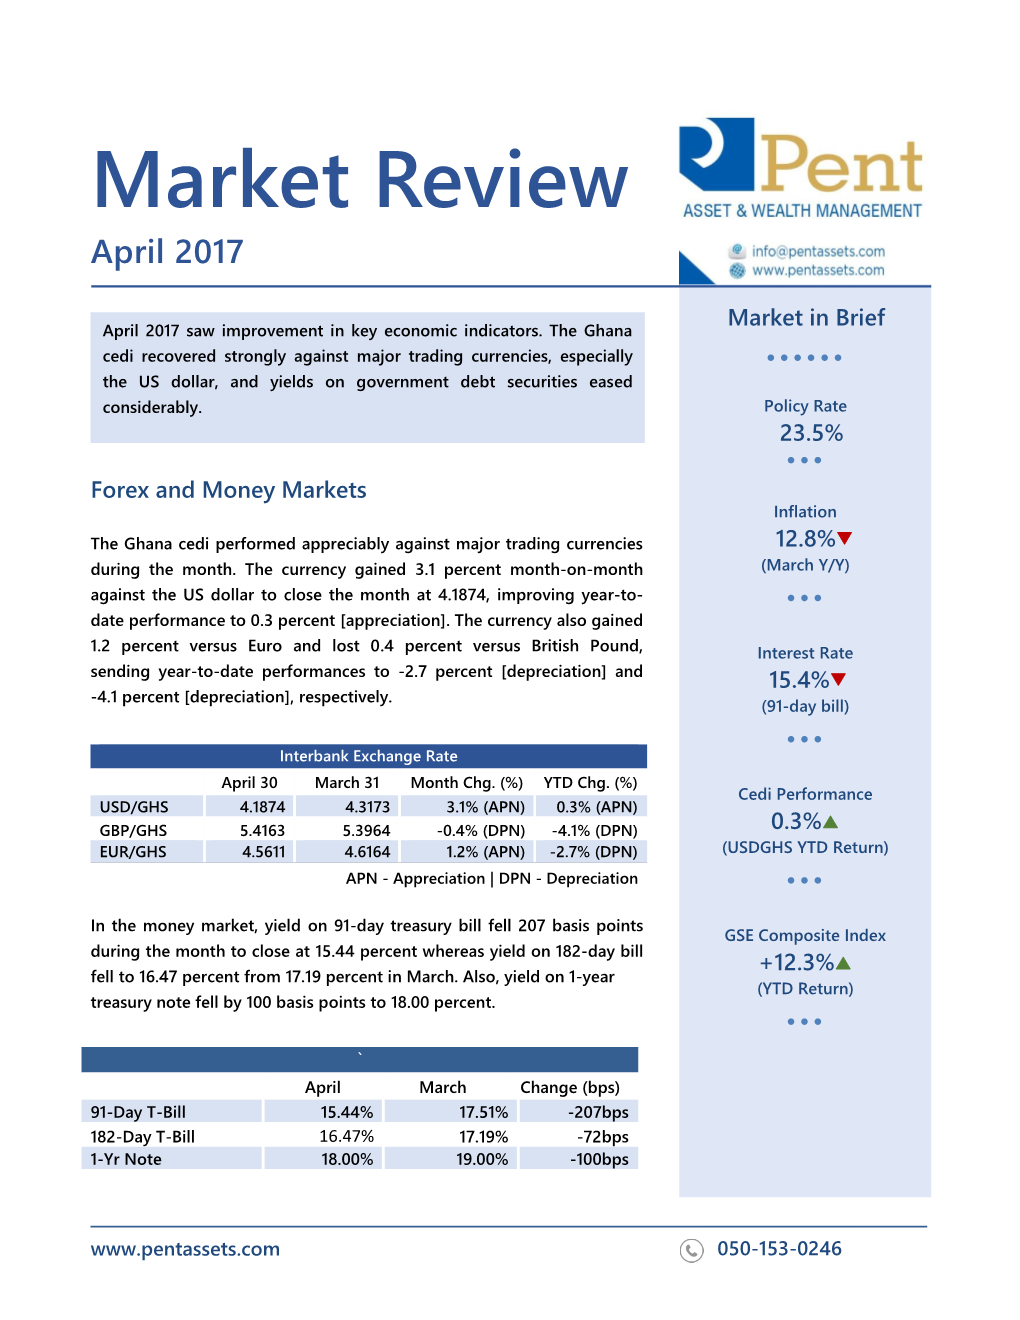 Market Review April 2017